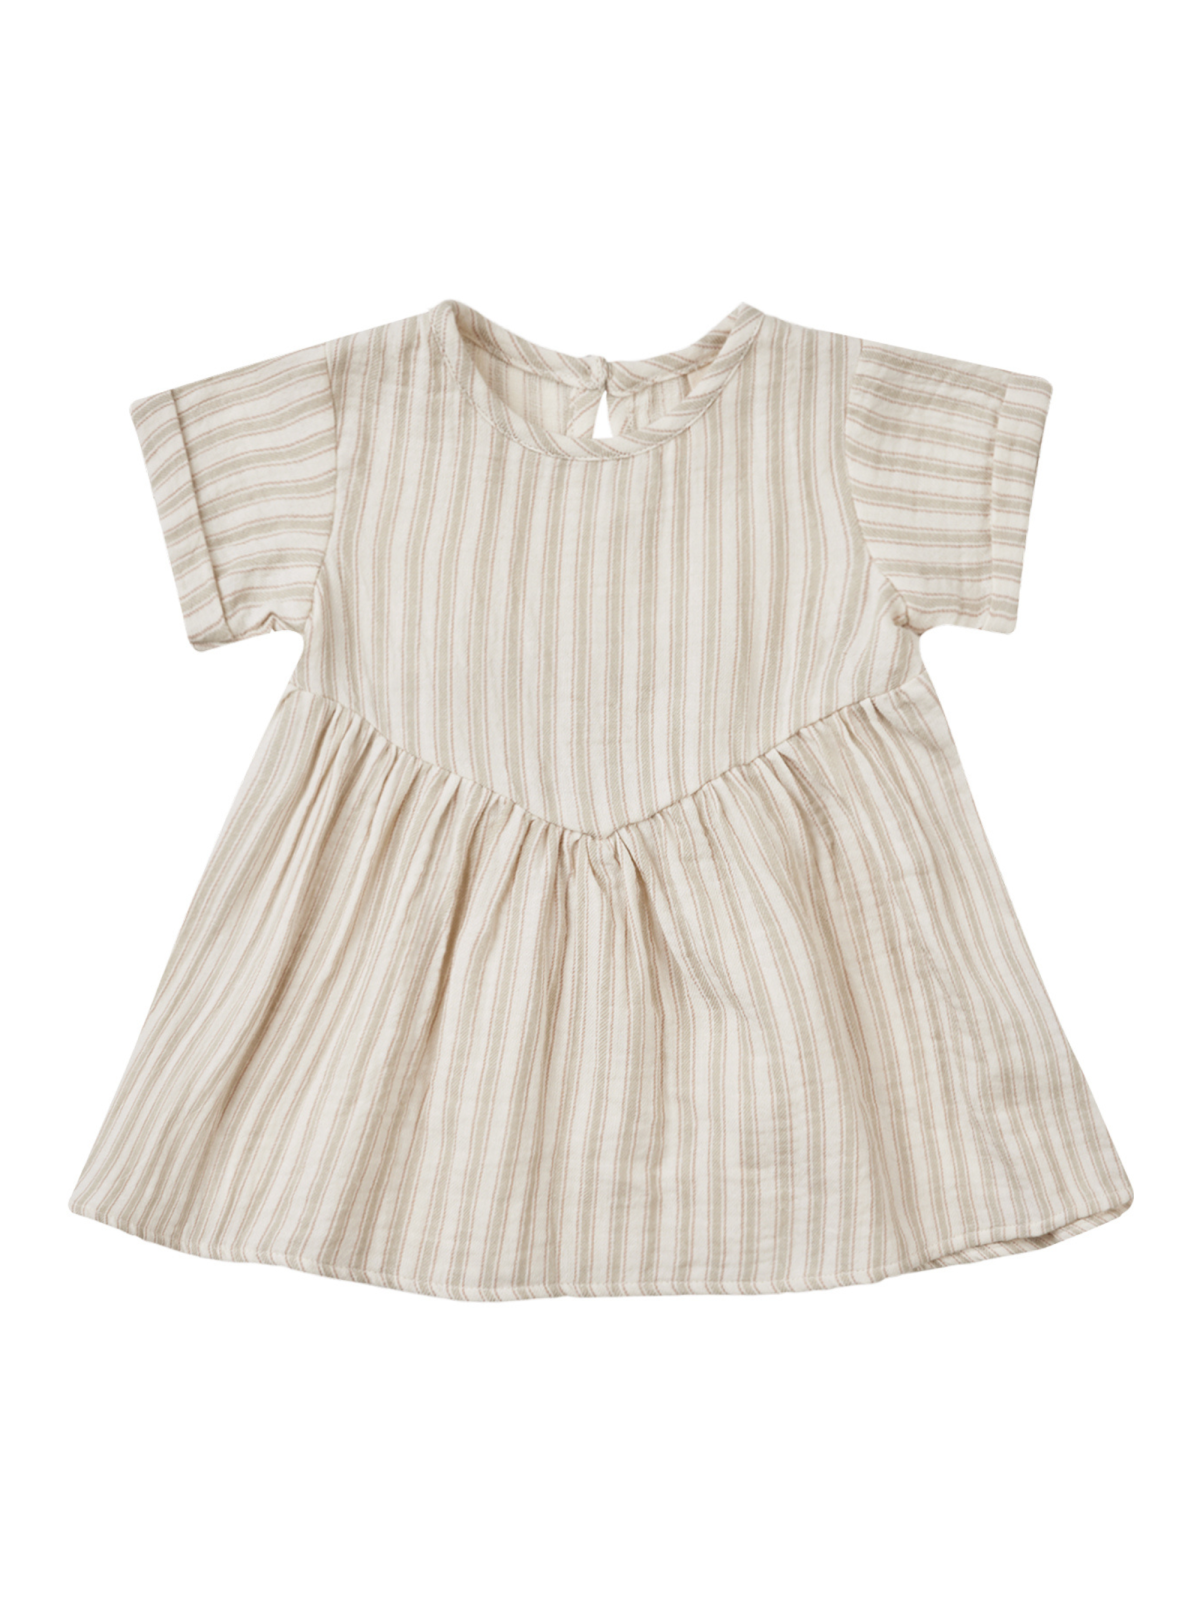 Organic Brielle Dress, Vintage Stripe